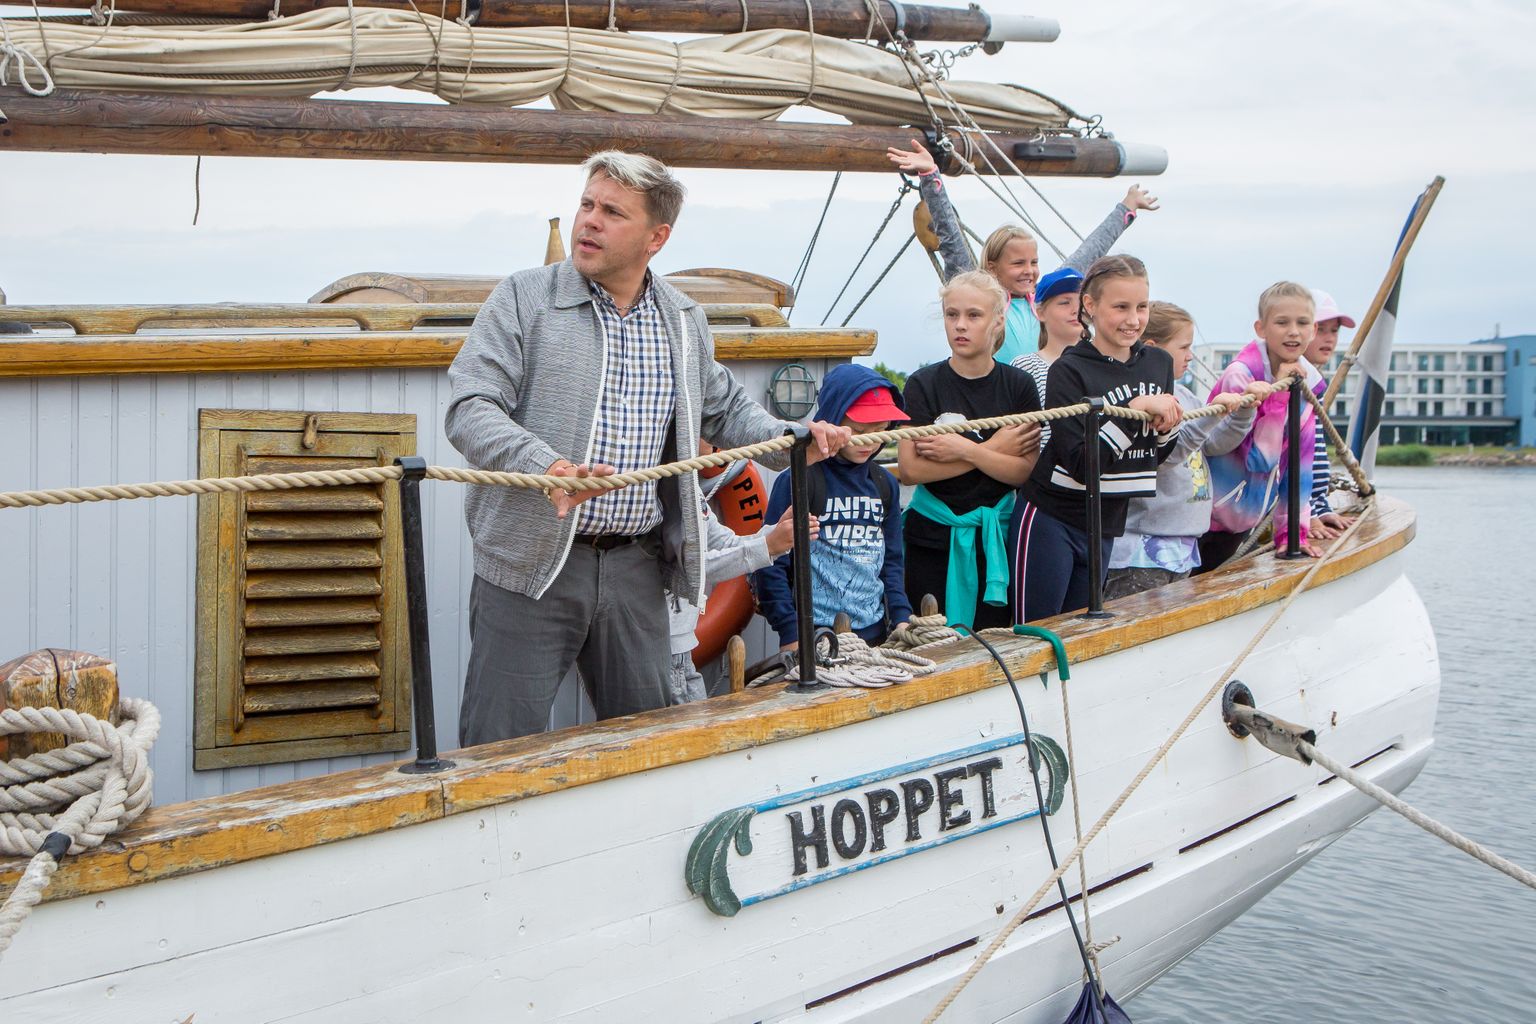 Kuunari Hoppet kipper Pekka Rooväli on lastele merereise korraldanud juba mitu aastat, kuid sel suvel võetakse merehariduse andmine ette juba kindla plaani järgi.